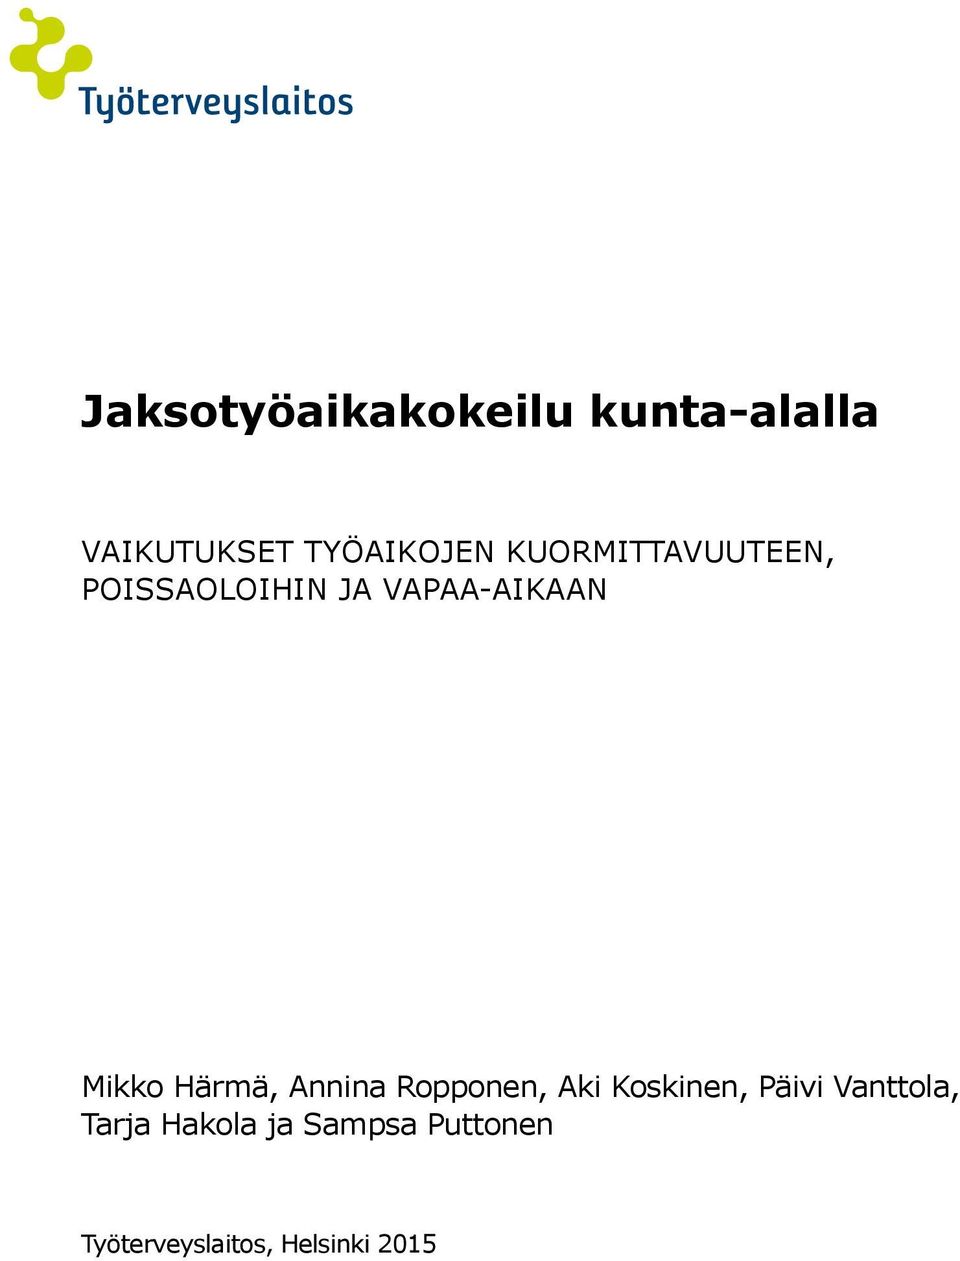 Annina Ropponen, Aki Koskinen, Päivi Vanttola,